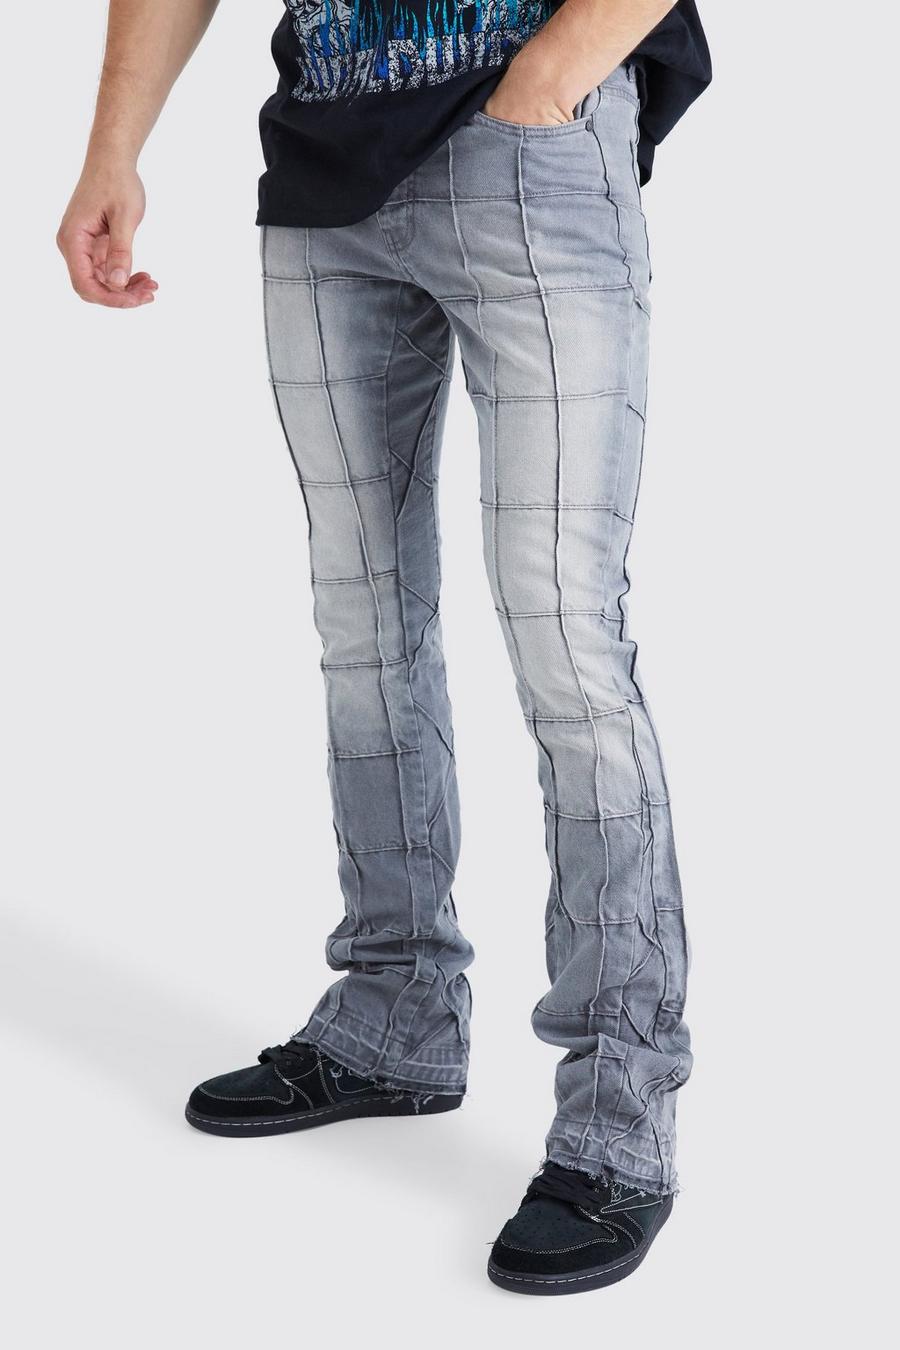 Jeans Tall Slim Fit in denim rigido con pannelli a zampa e inserti, Mid grey grigio